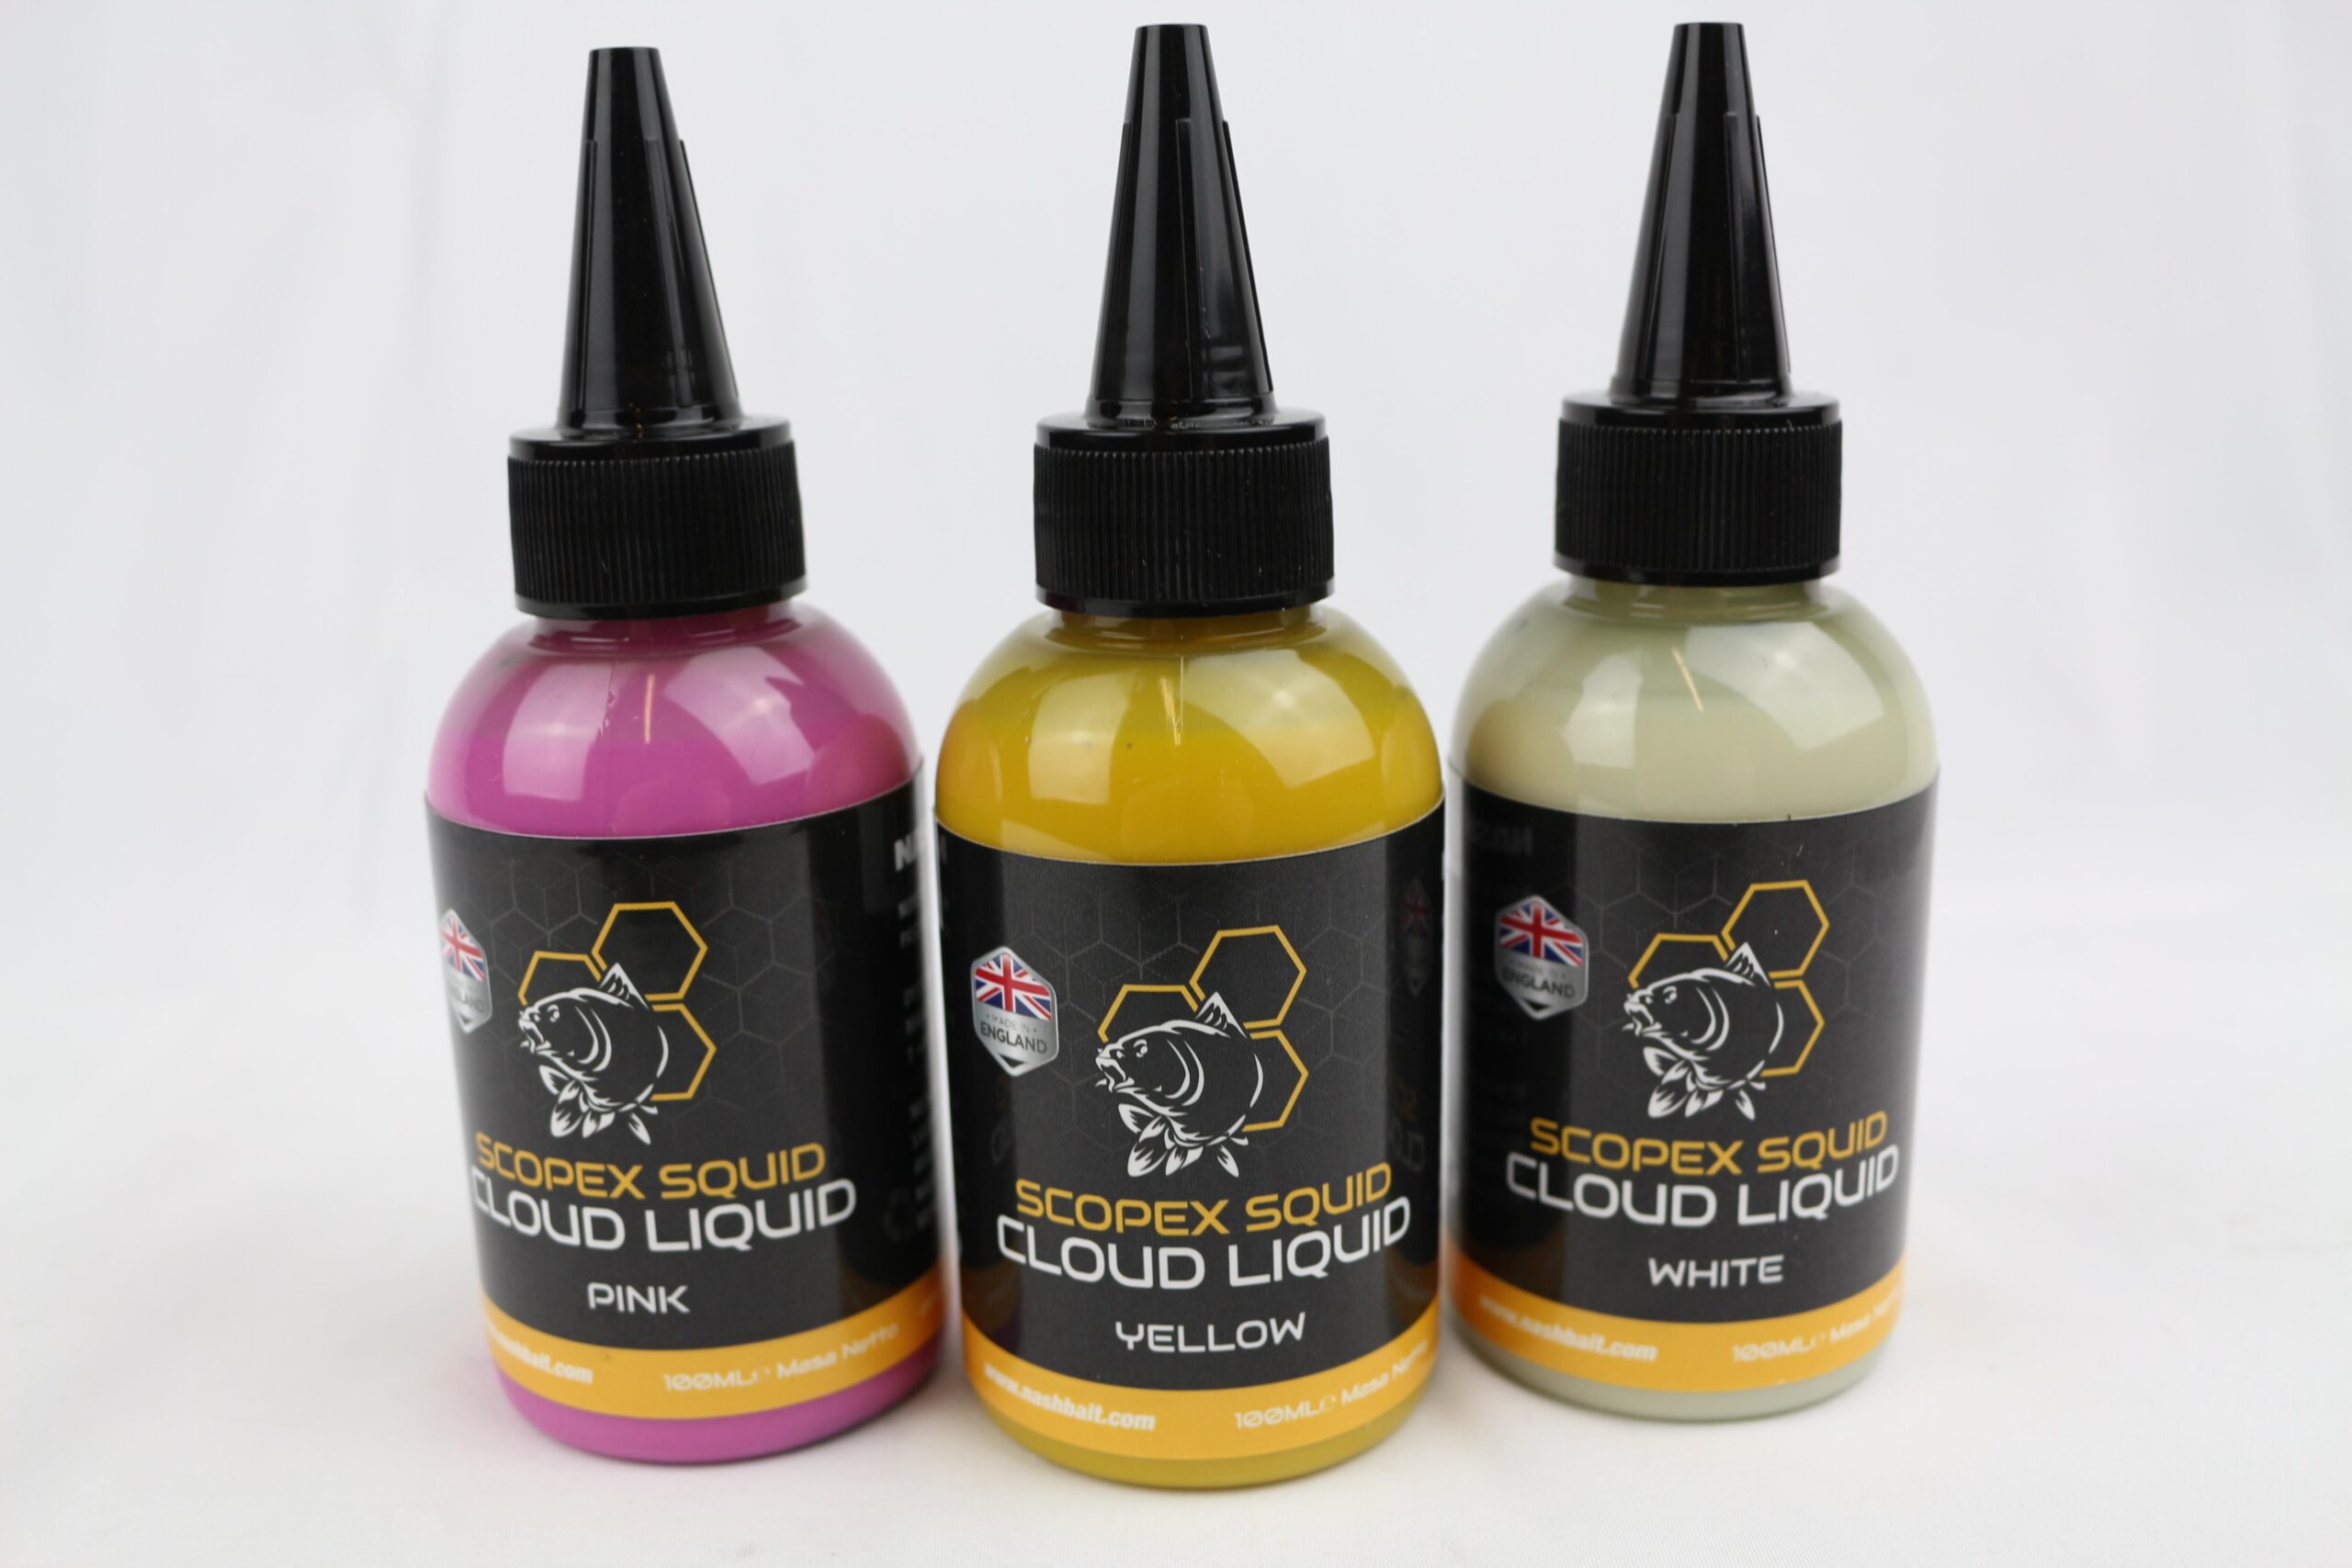 Nash Scopex Squid Cloud Liquid 100ml